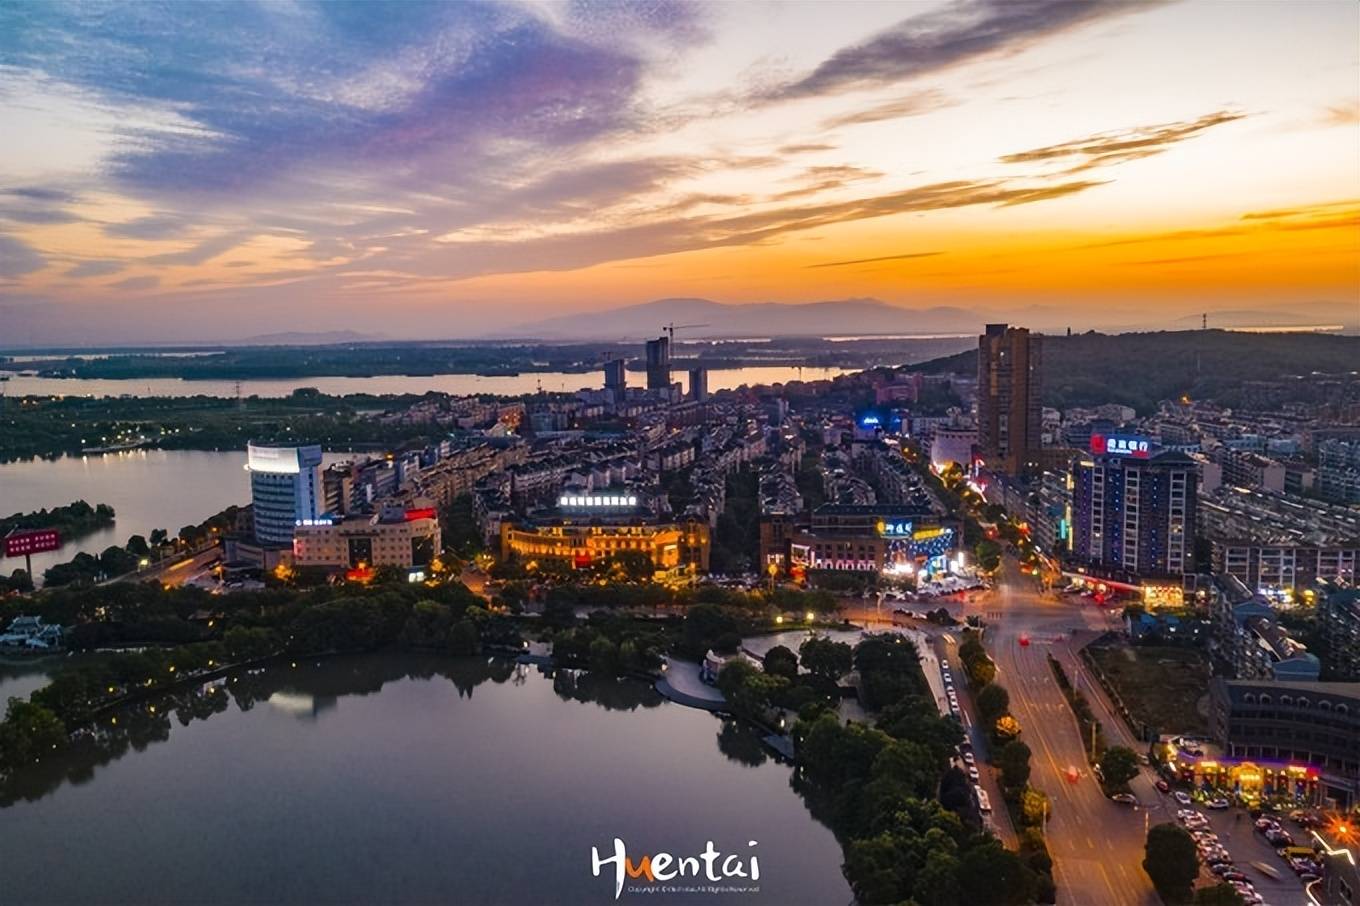 安徽有座宋代古镇，曾被称为“小上海”